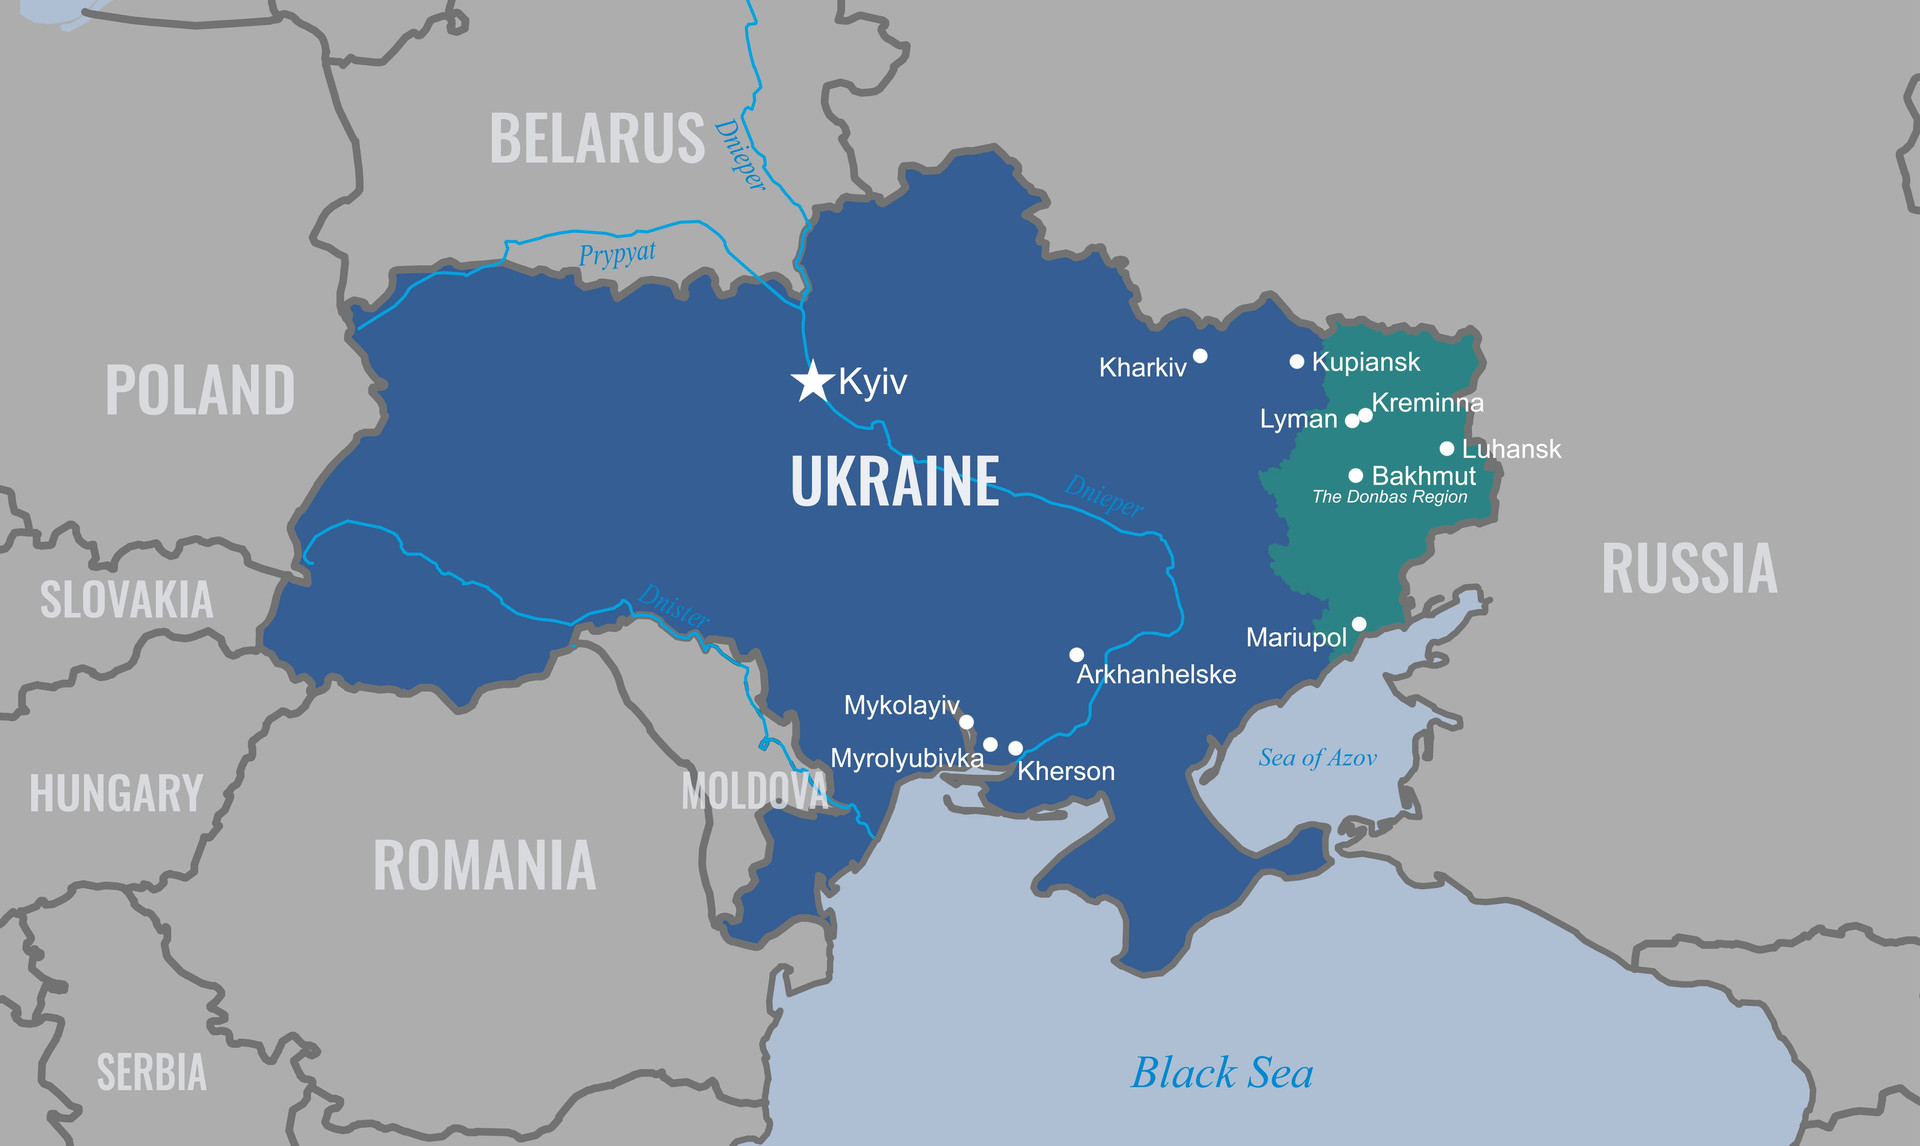 Ván cược của Nga khi dựng phòng tuyến Răng rồng ngăn Ukraine phản công - 4